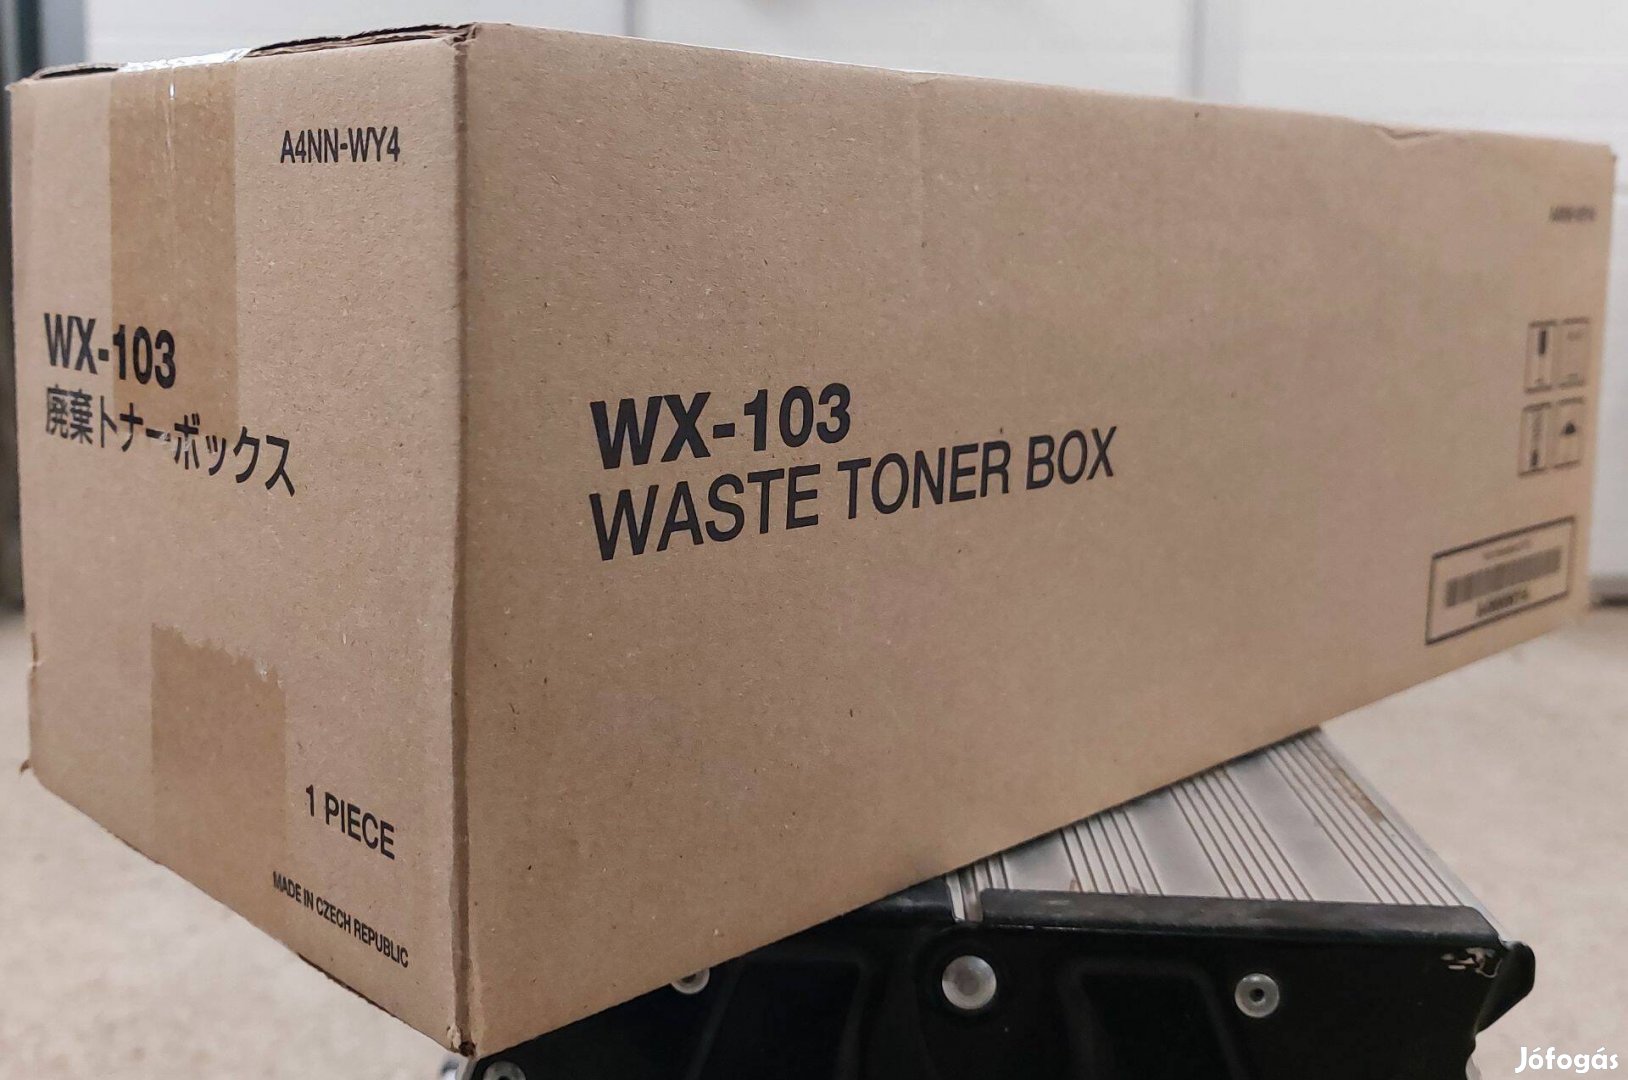 Konica Minolta A4Nnwy4 WX-103 cikkszámú Waste Toner